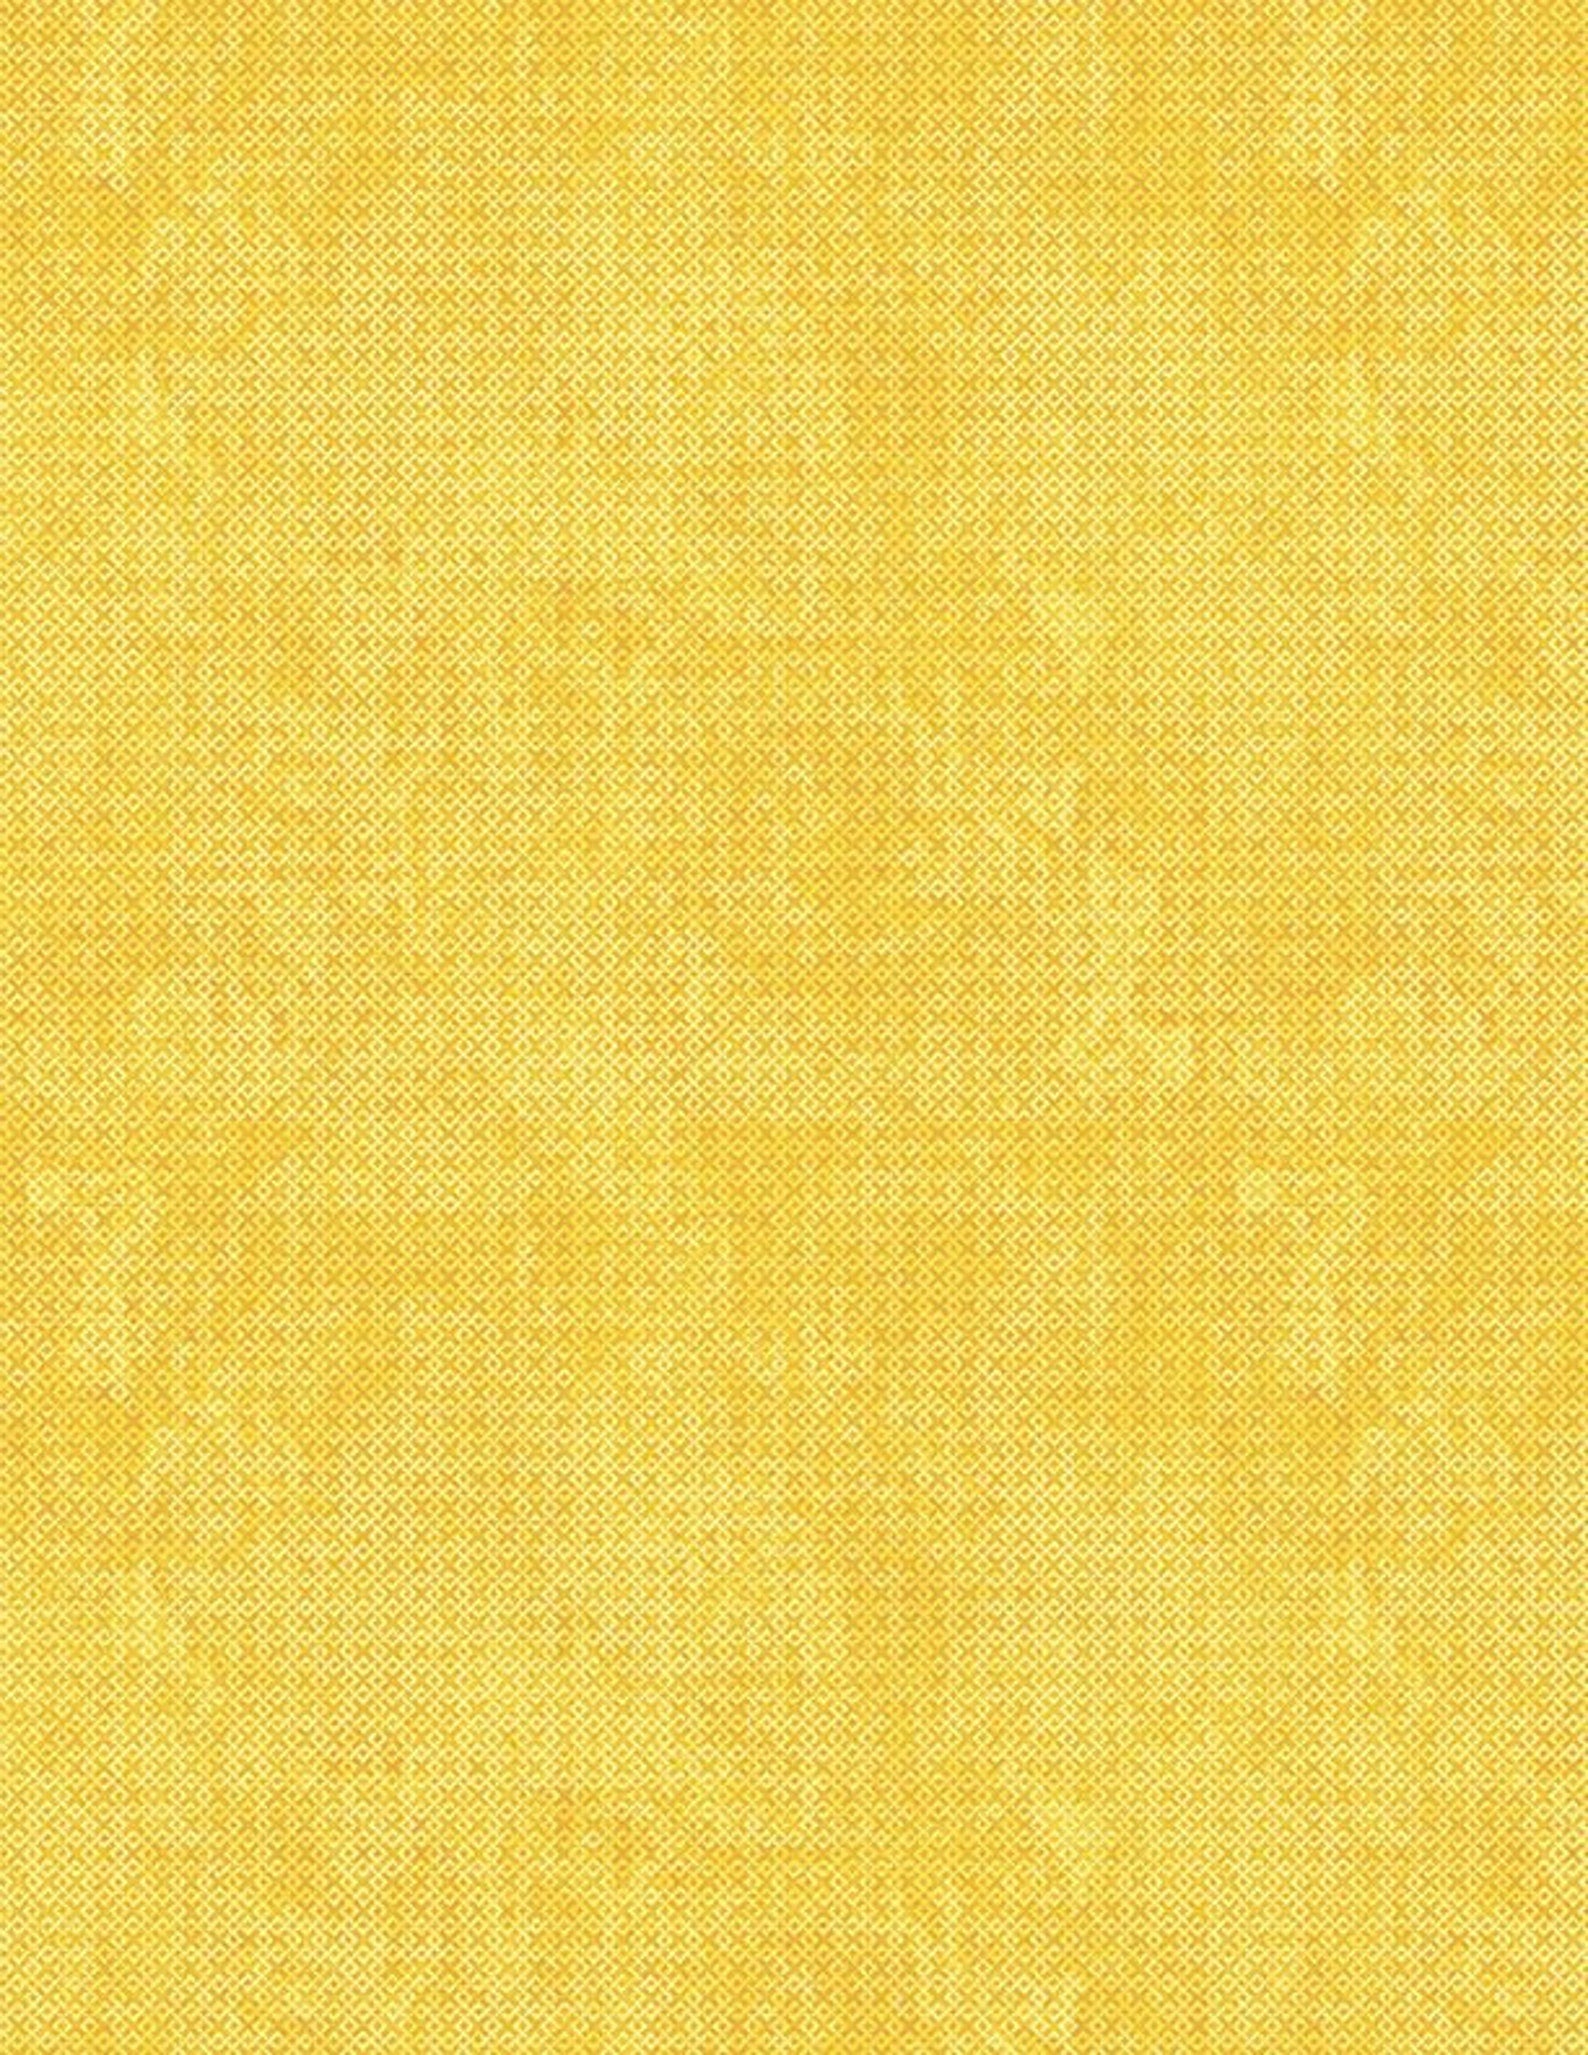 WP Batik Criss Cross Yellow